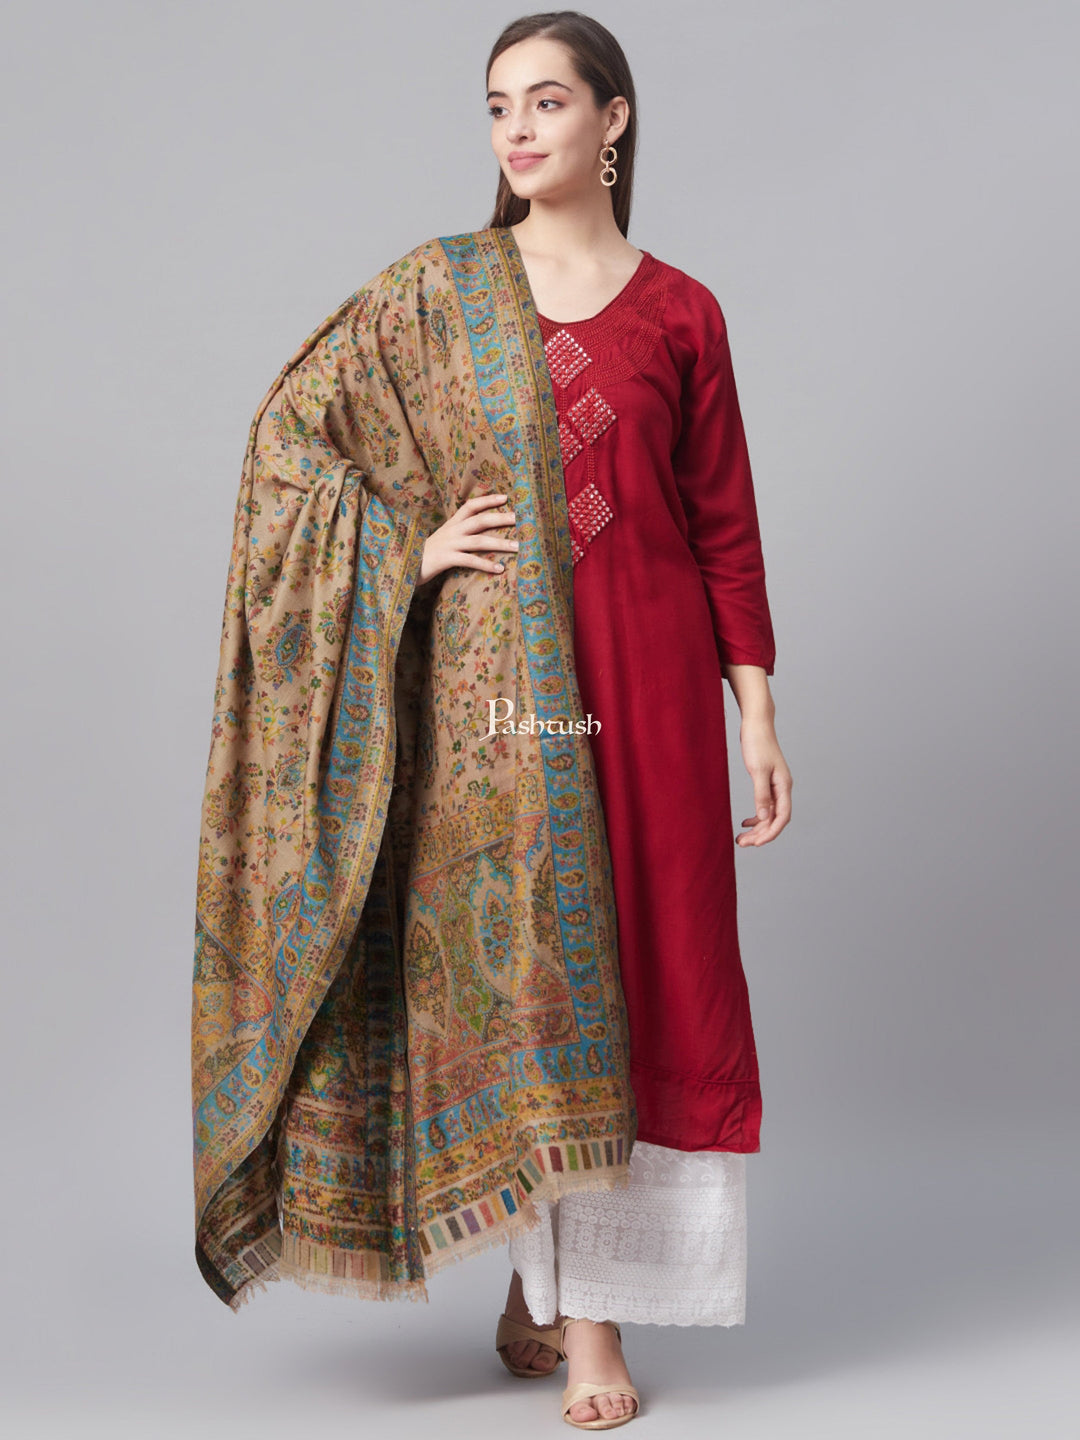 Pashtush India Womens Shawls Pashtush Womens Pure Wool Ethnic Weave Shawl, With Woolmark Certificate, Natural Beige